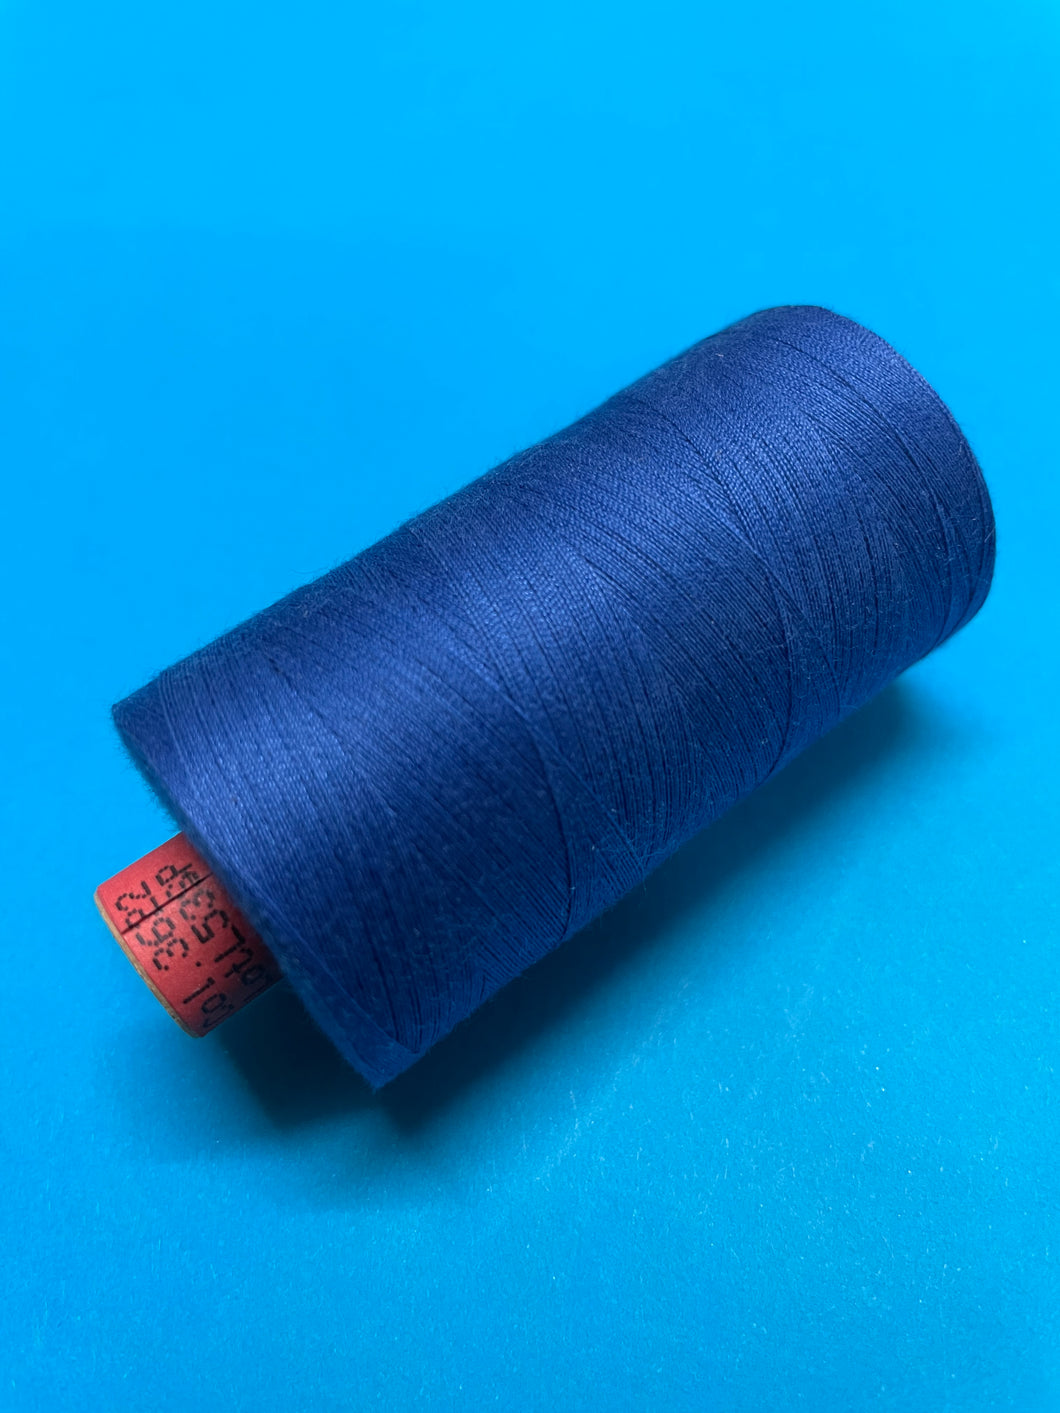 Rasant Thread Colour # 3622 1000m Spool